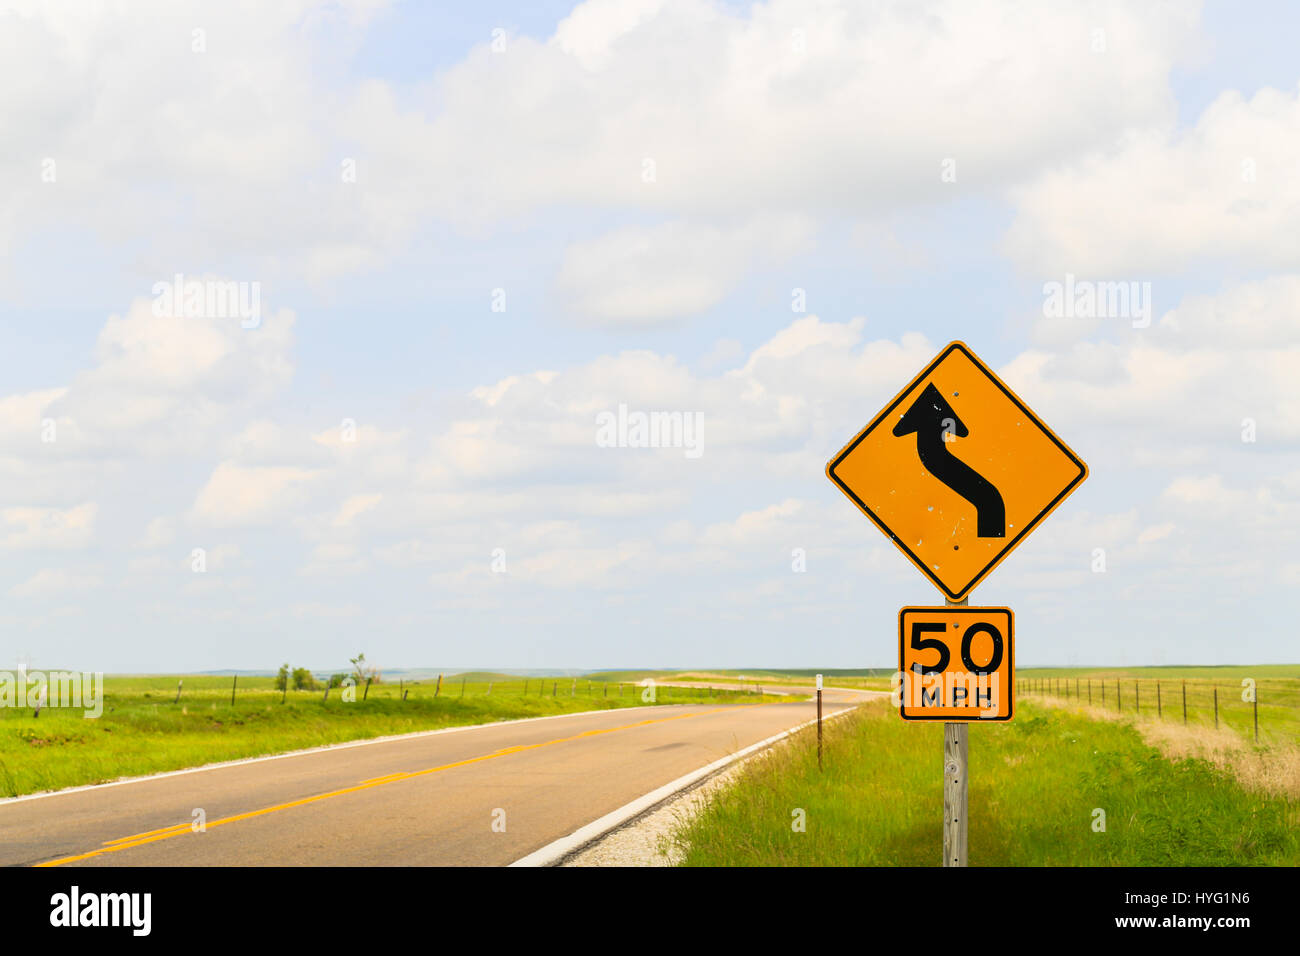 Panneau routier afficher la vitesse maximale de 50 mi/h et que c'est une route sinueuse dans la région de Flint Hills dans le Kansas. Banque D'Images